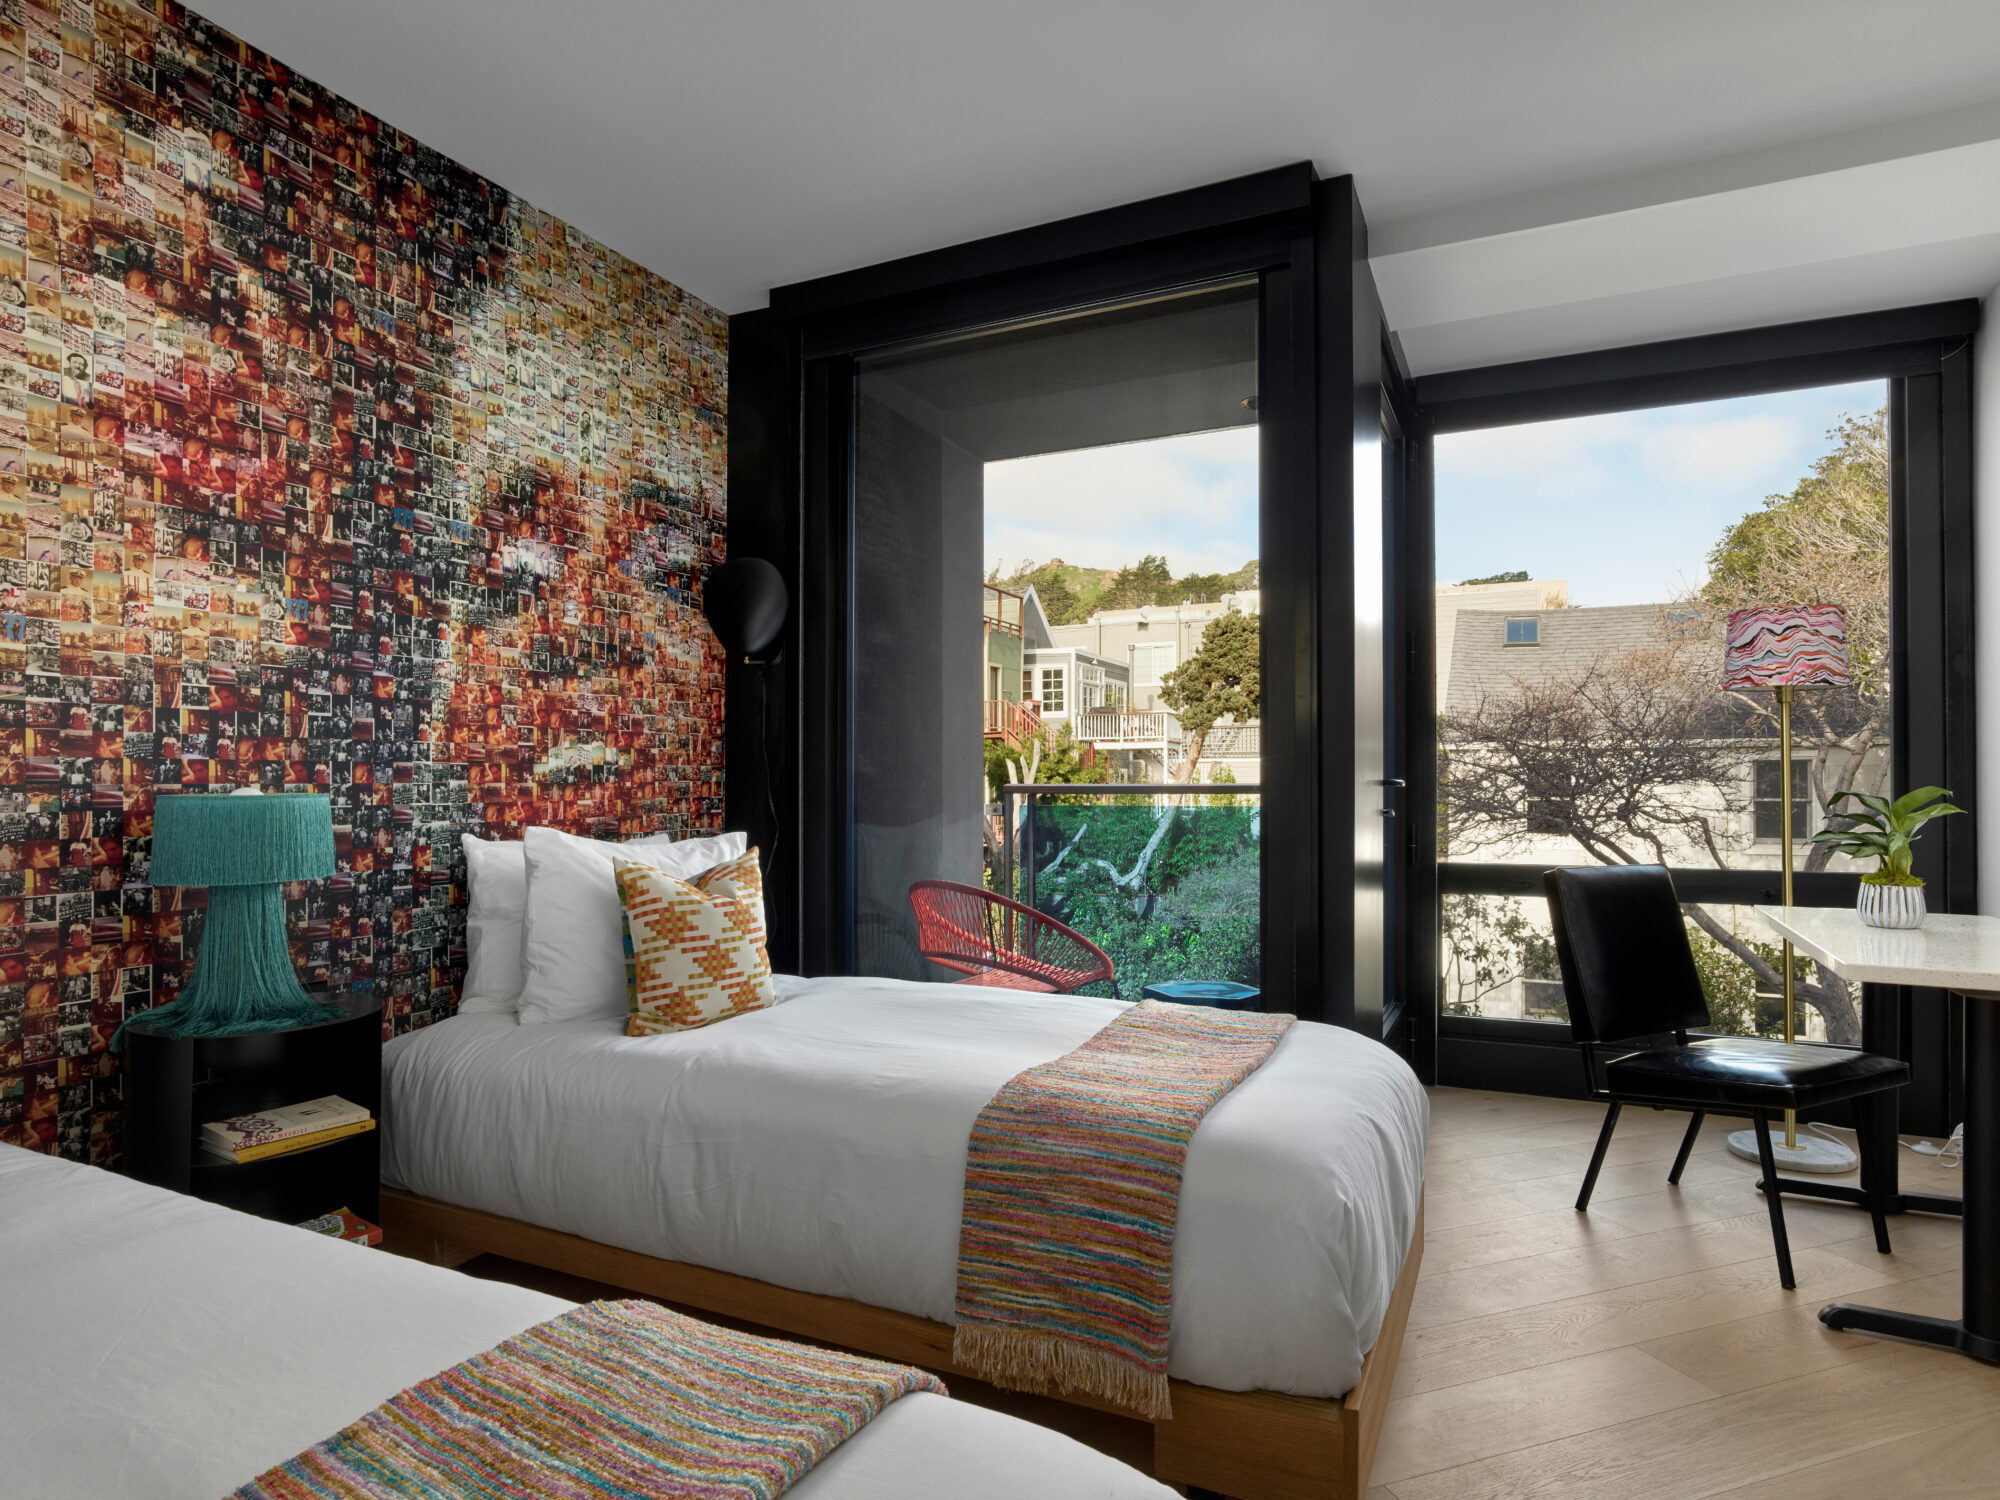 jon de la cruz hotel castro bedroom with city view